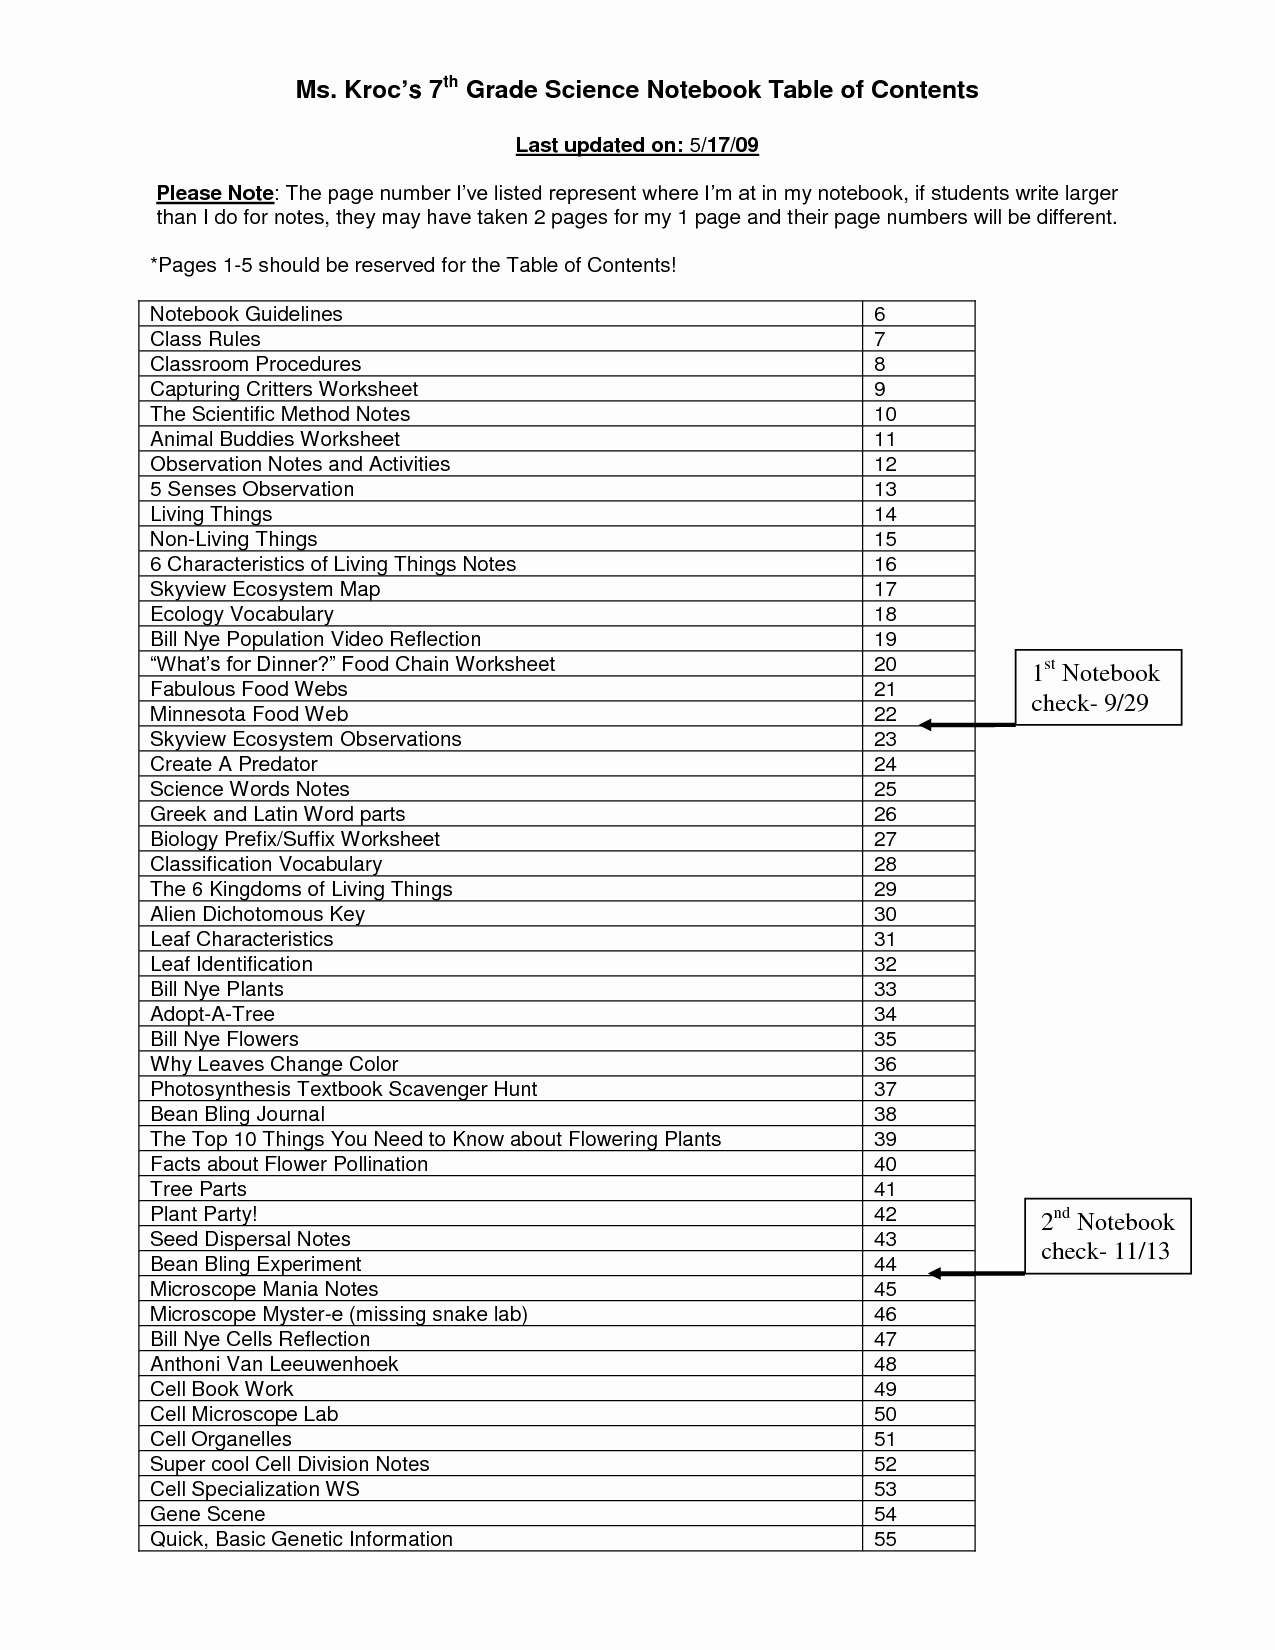 Dichotomous Key Worksheet Middle School Luxury 15 Best Of Rhyme Scheme Worksheets Pdf Rhyming